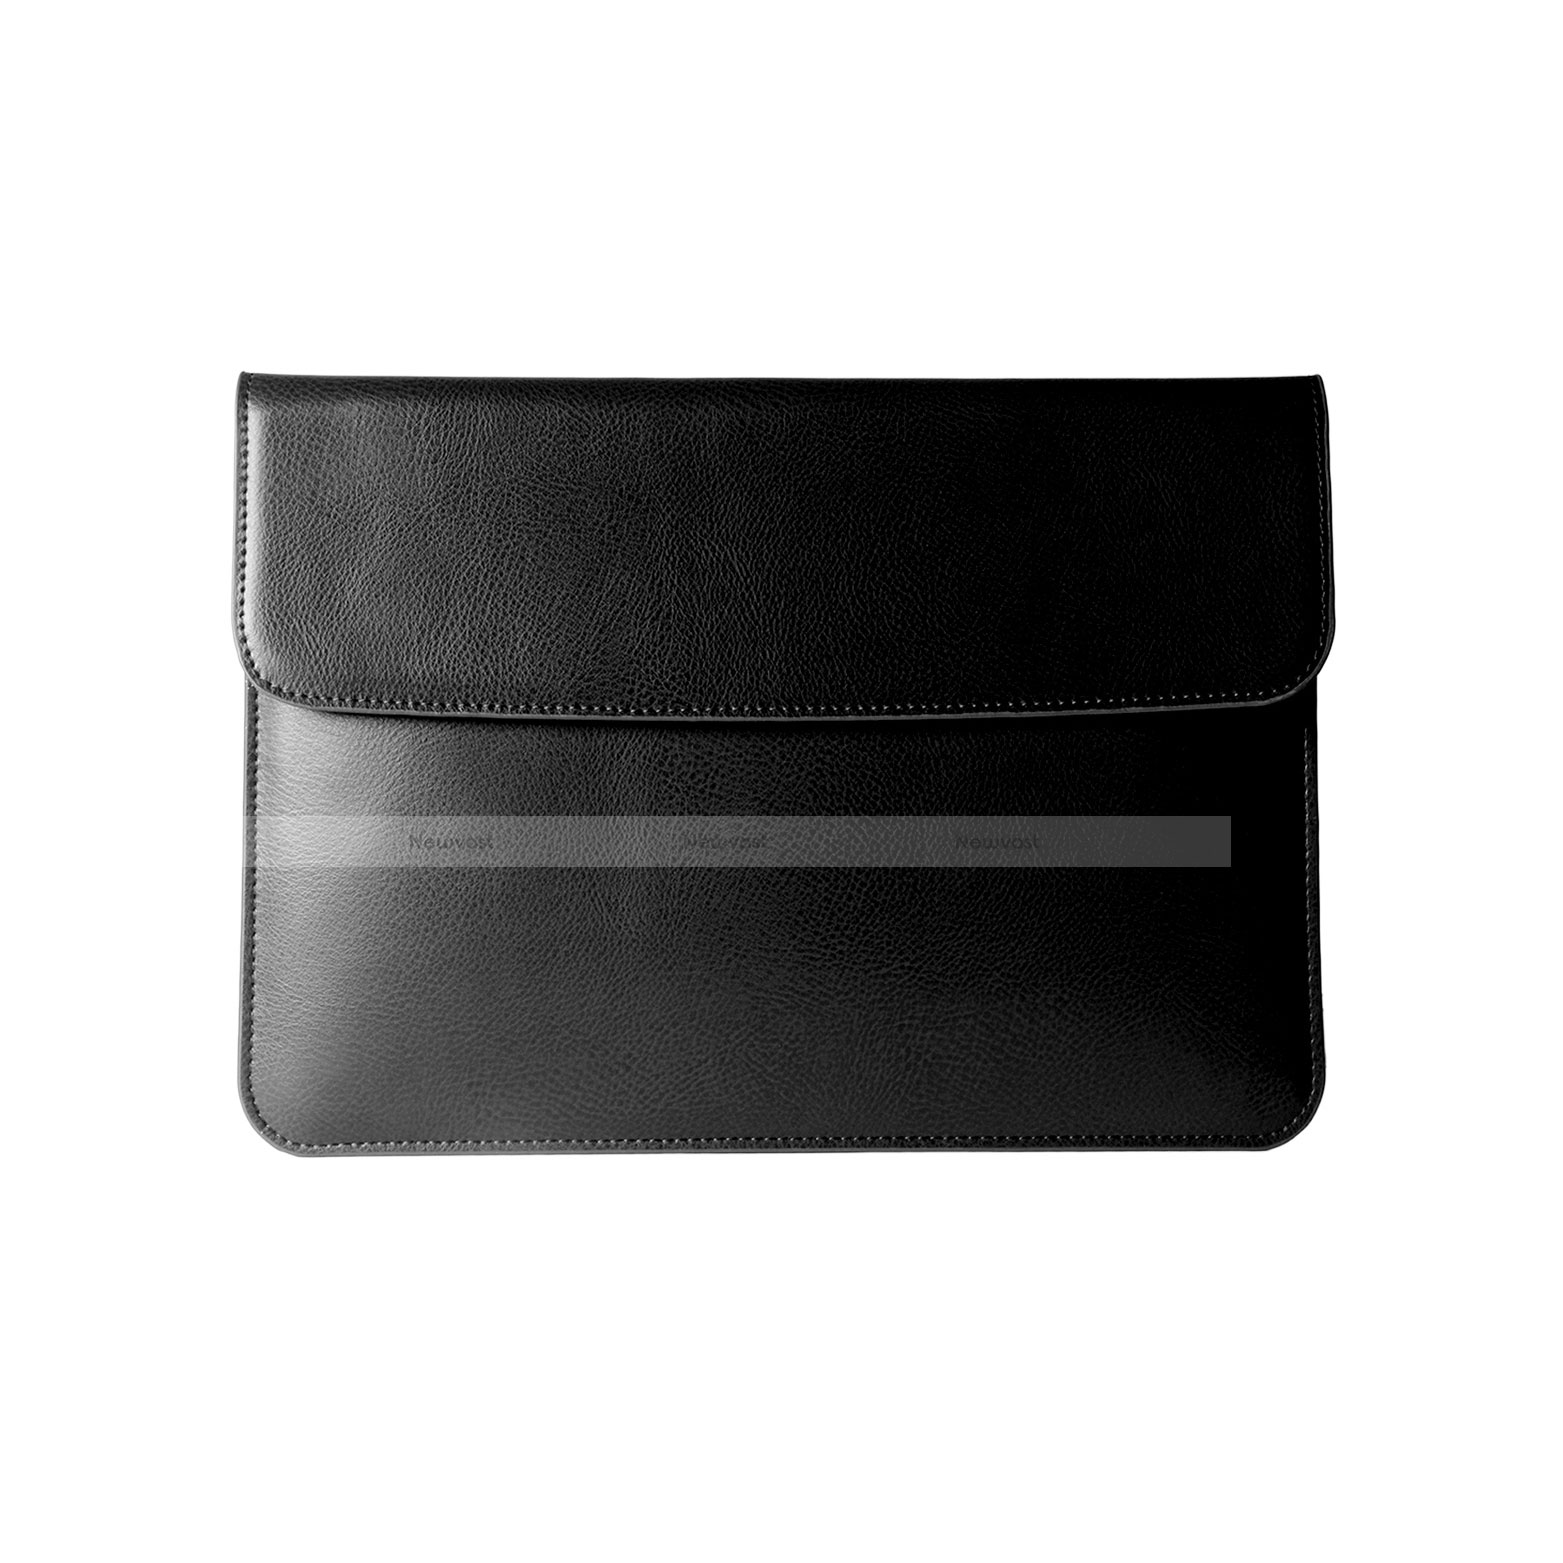 Sleeve Velvet Bag Leather Case Pocket L05 for Apple MacBook Pro 13 inch Black